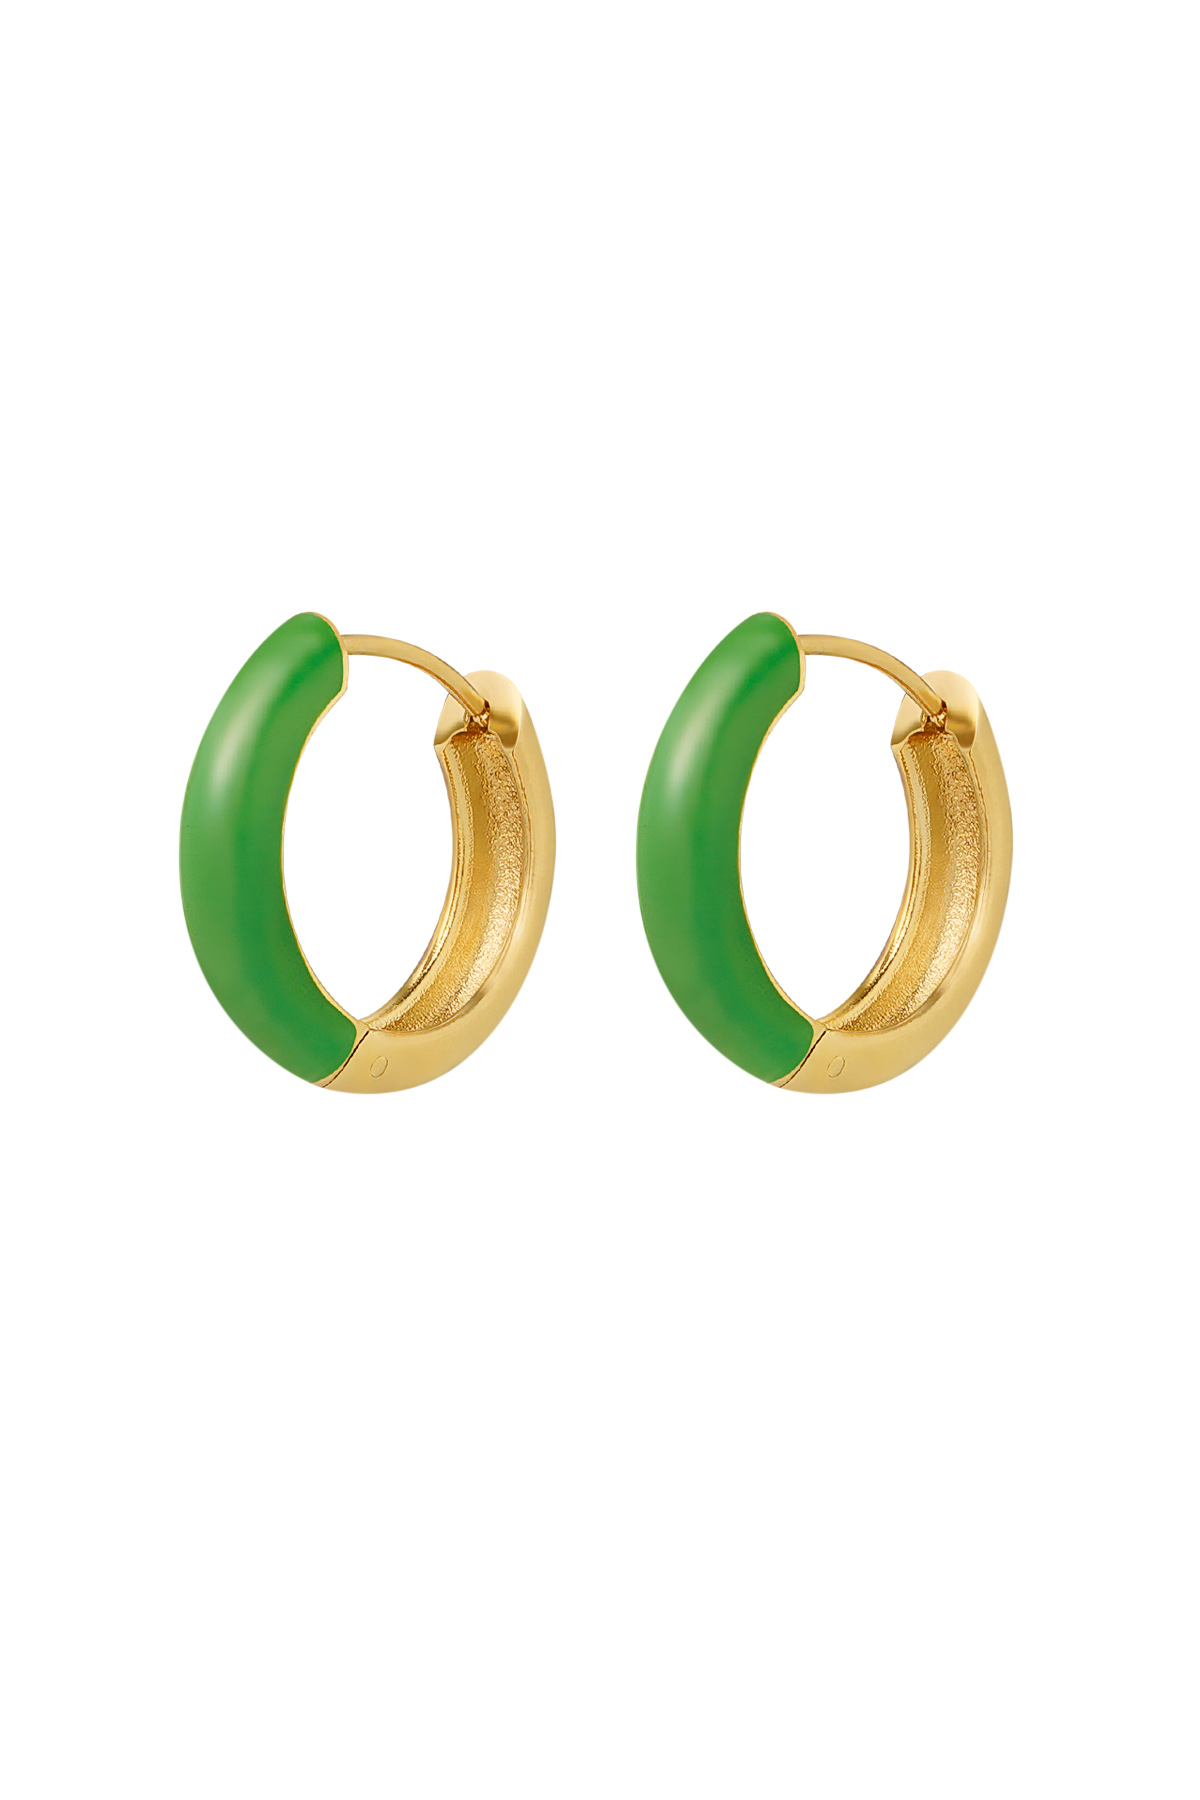 orecchini verde - oro 